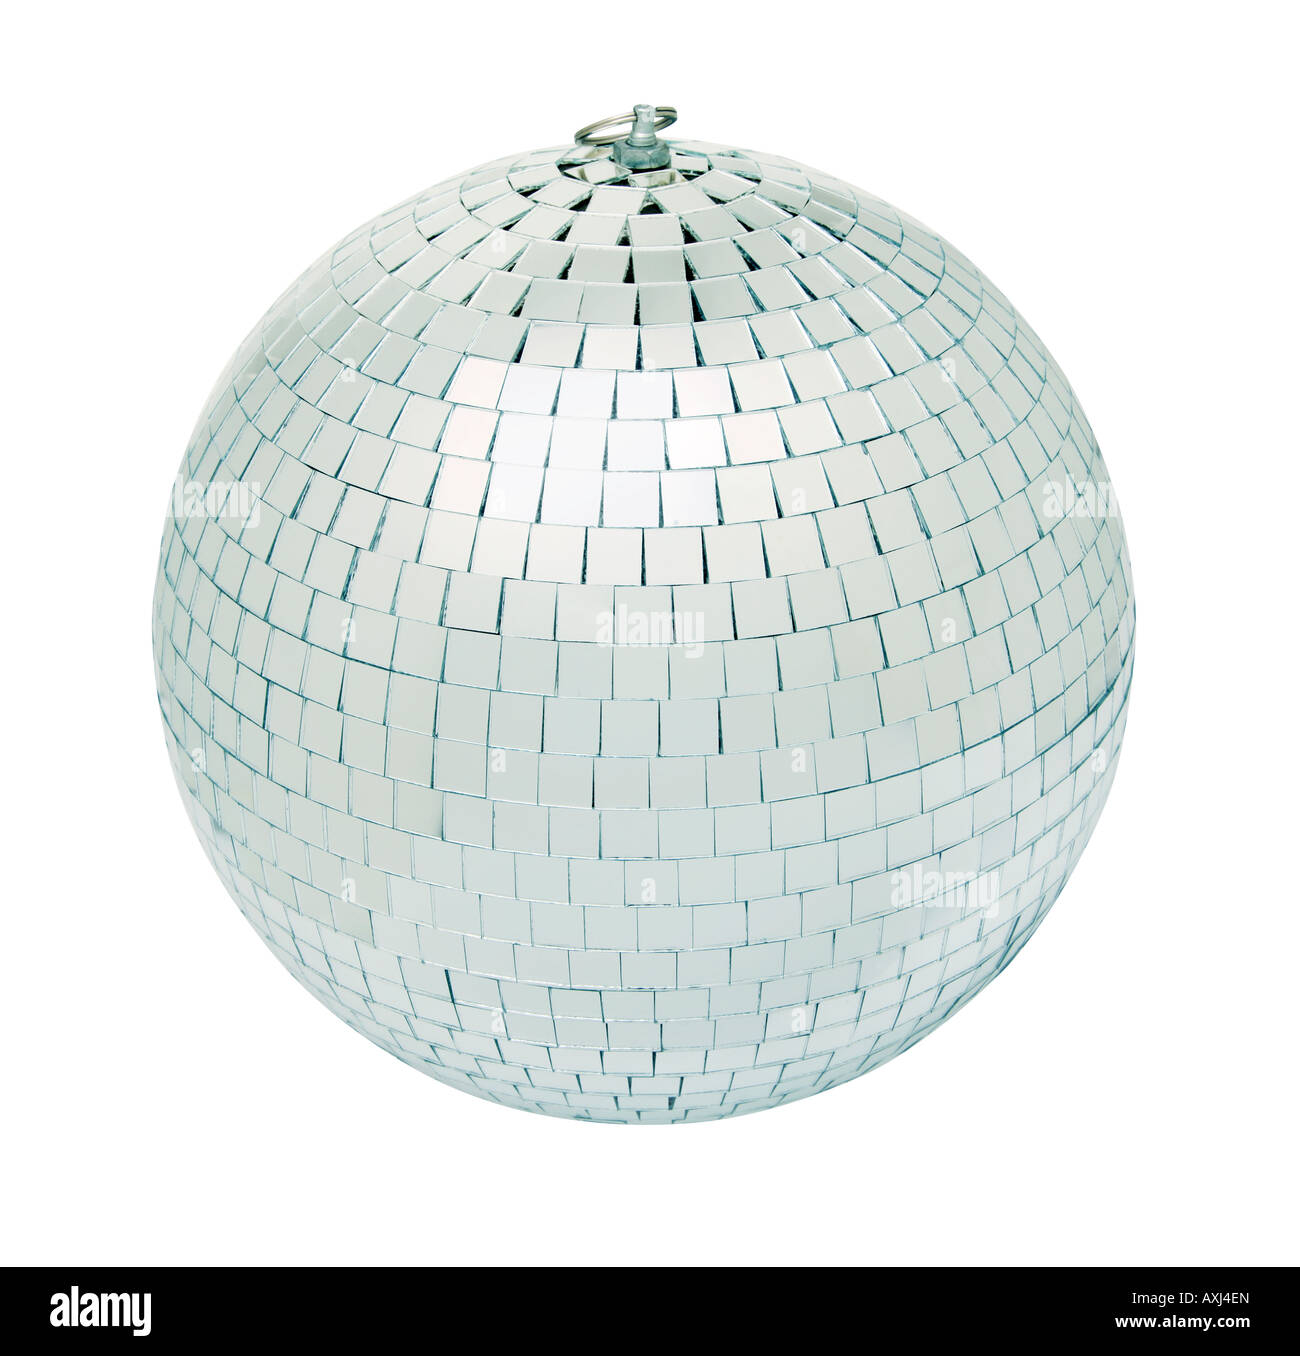 Du vrai disco mirrorball isolé sur fond blanc tourné en studio avec éclairage même Banque D'Images